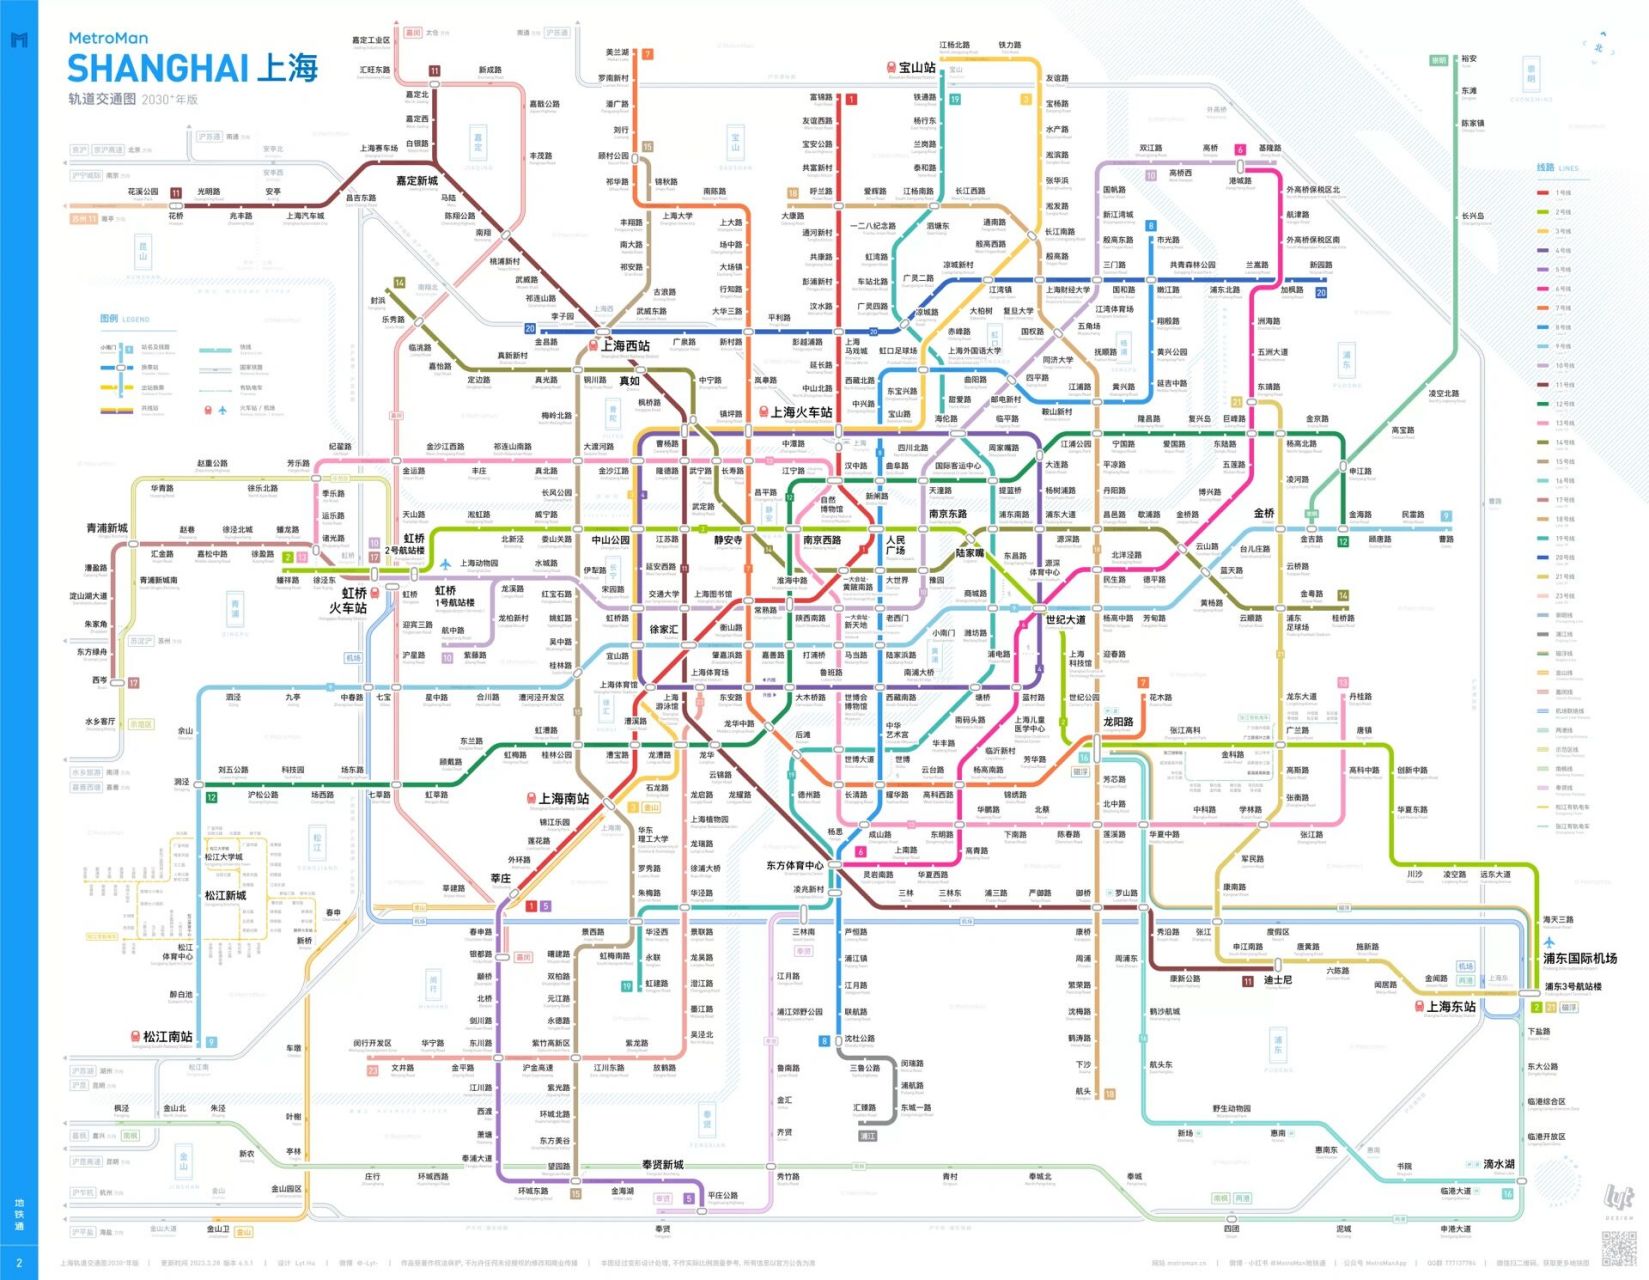 上海轨道交通线路图2030 年版 (第三期地铁 上海地铁前后对比